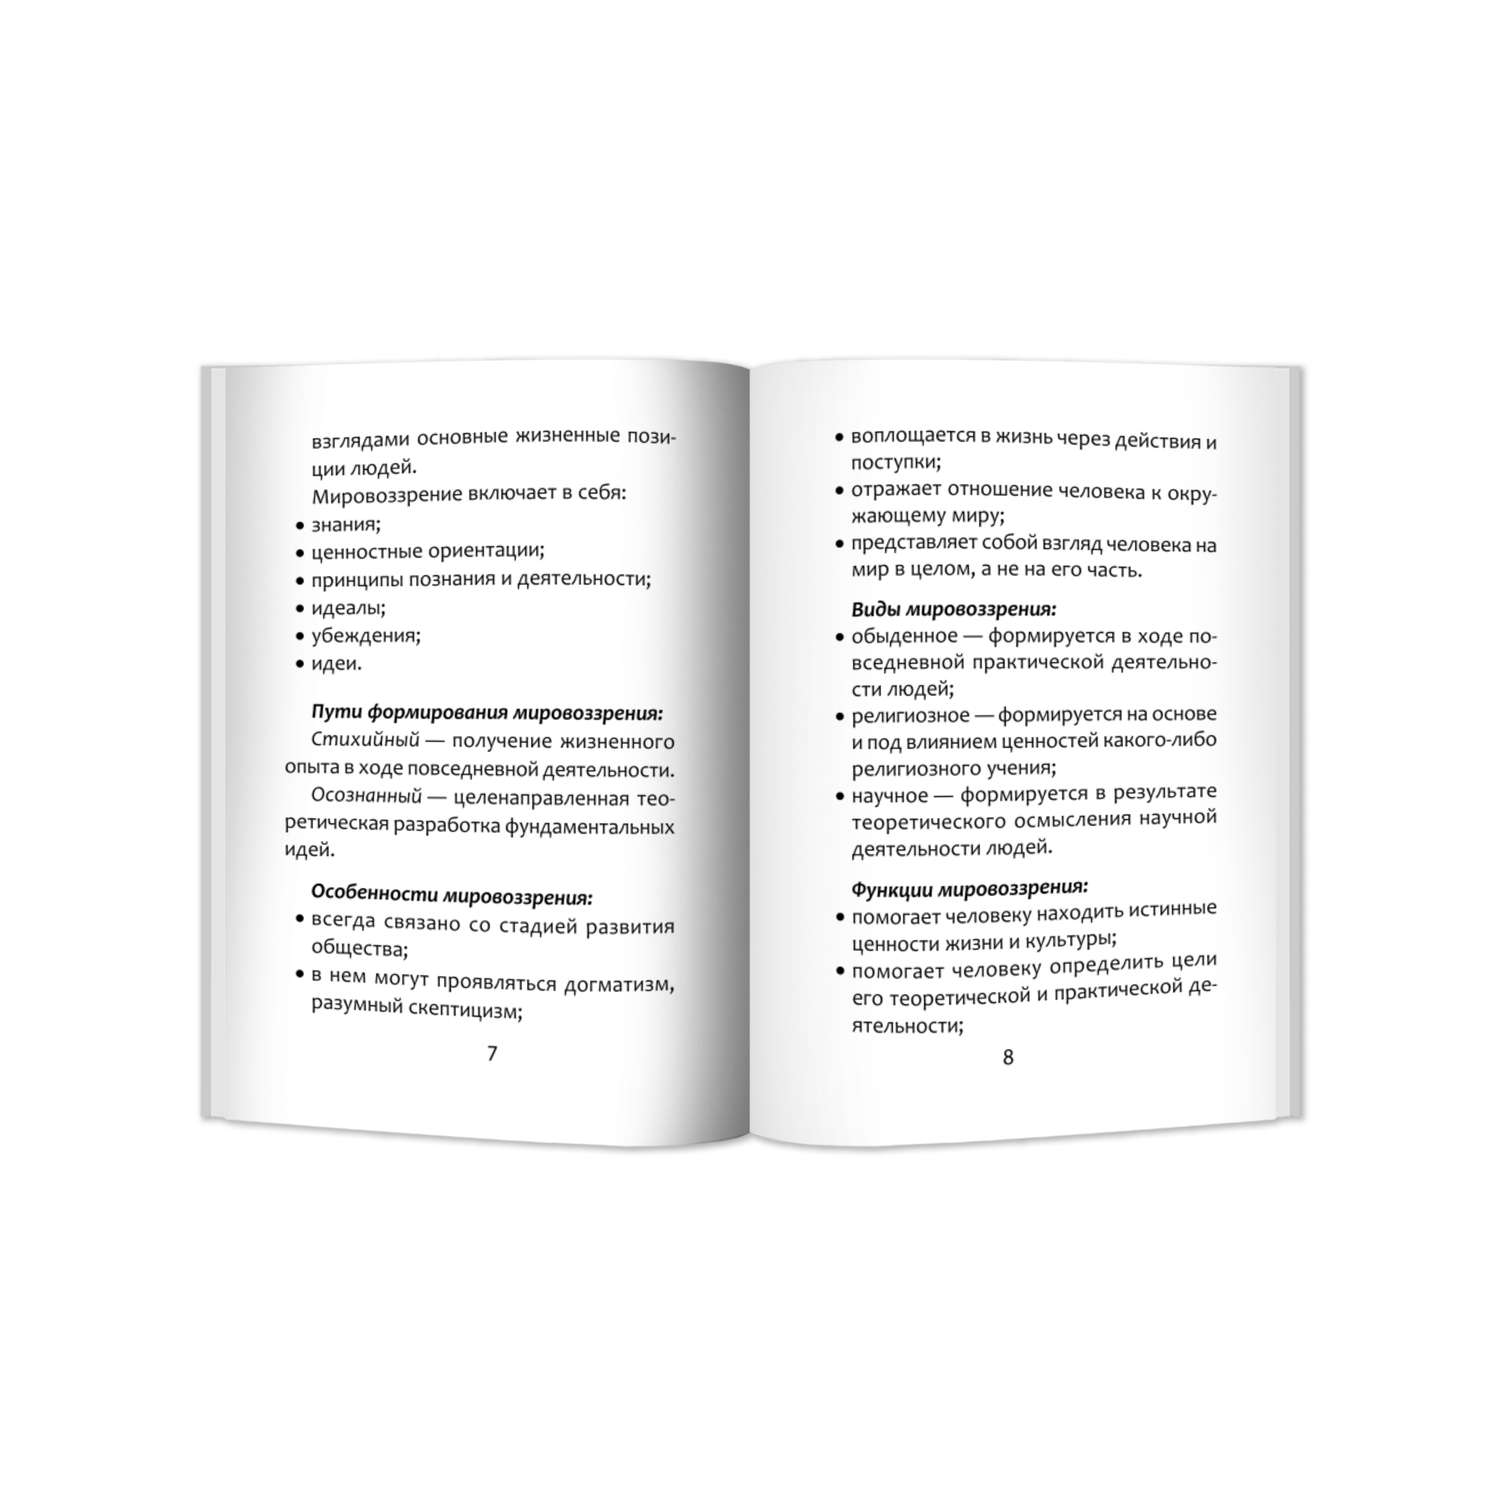 Книга Феникс Обществознание: справочник для подготовки к ЕГЭ - фото 3